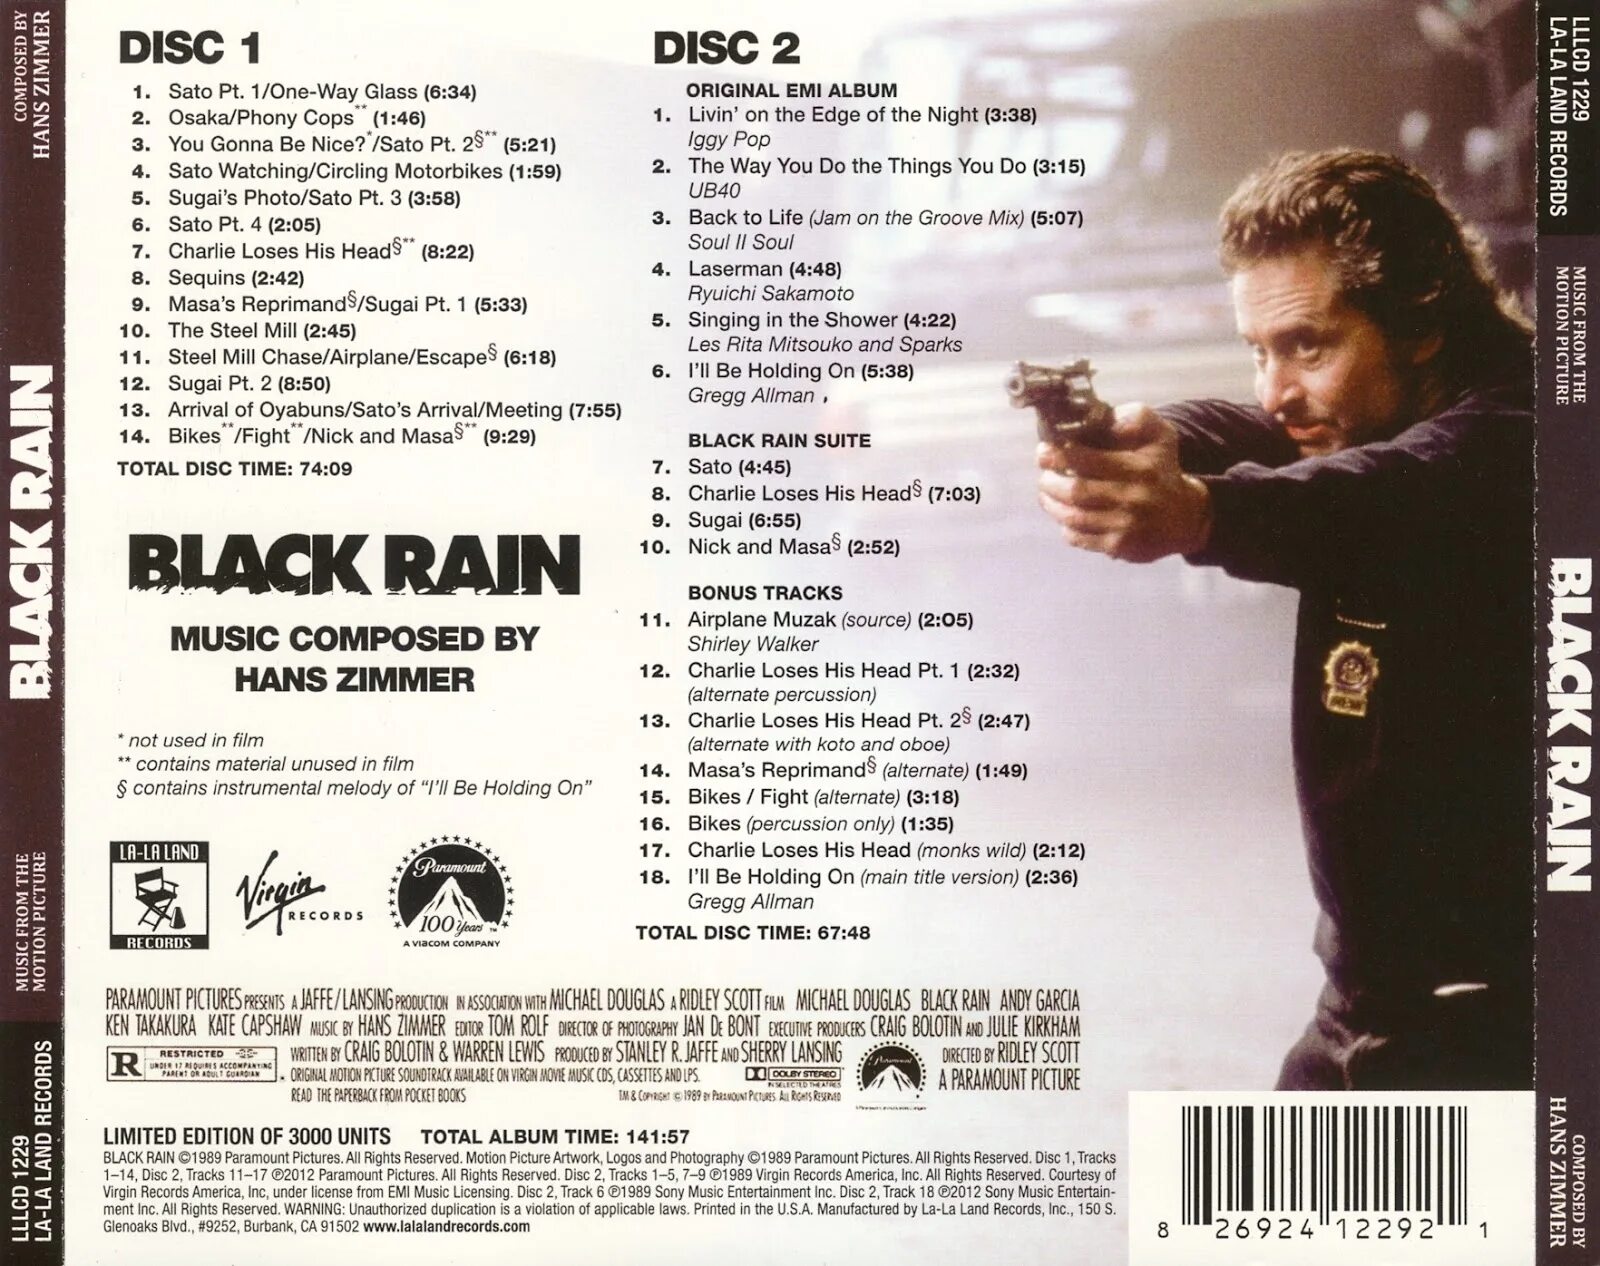 Черный дождь текст. Black Rain - OST. Чёрный дождь (1989) (Black Rain). Black Rain группа Франция.